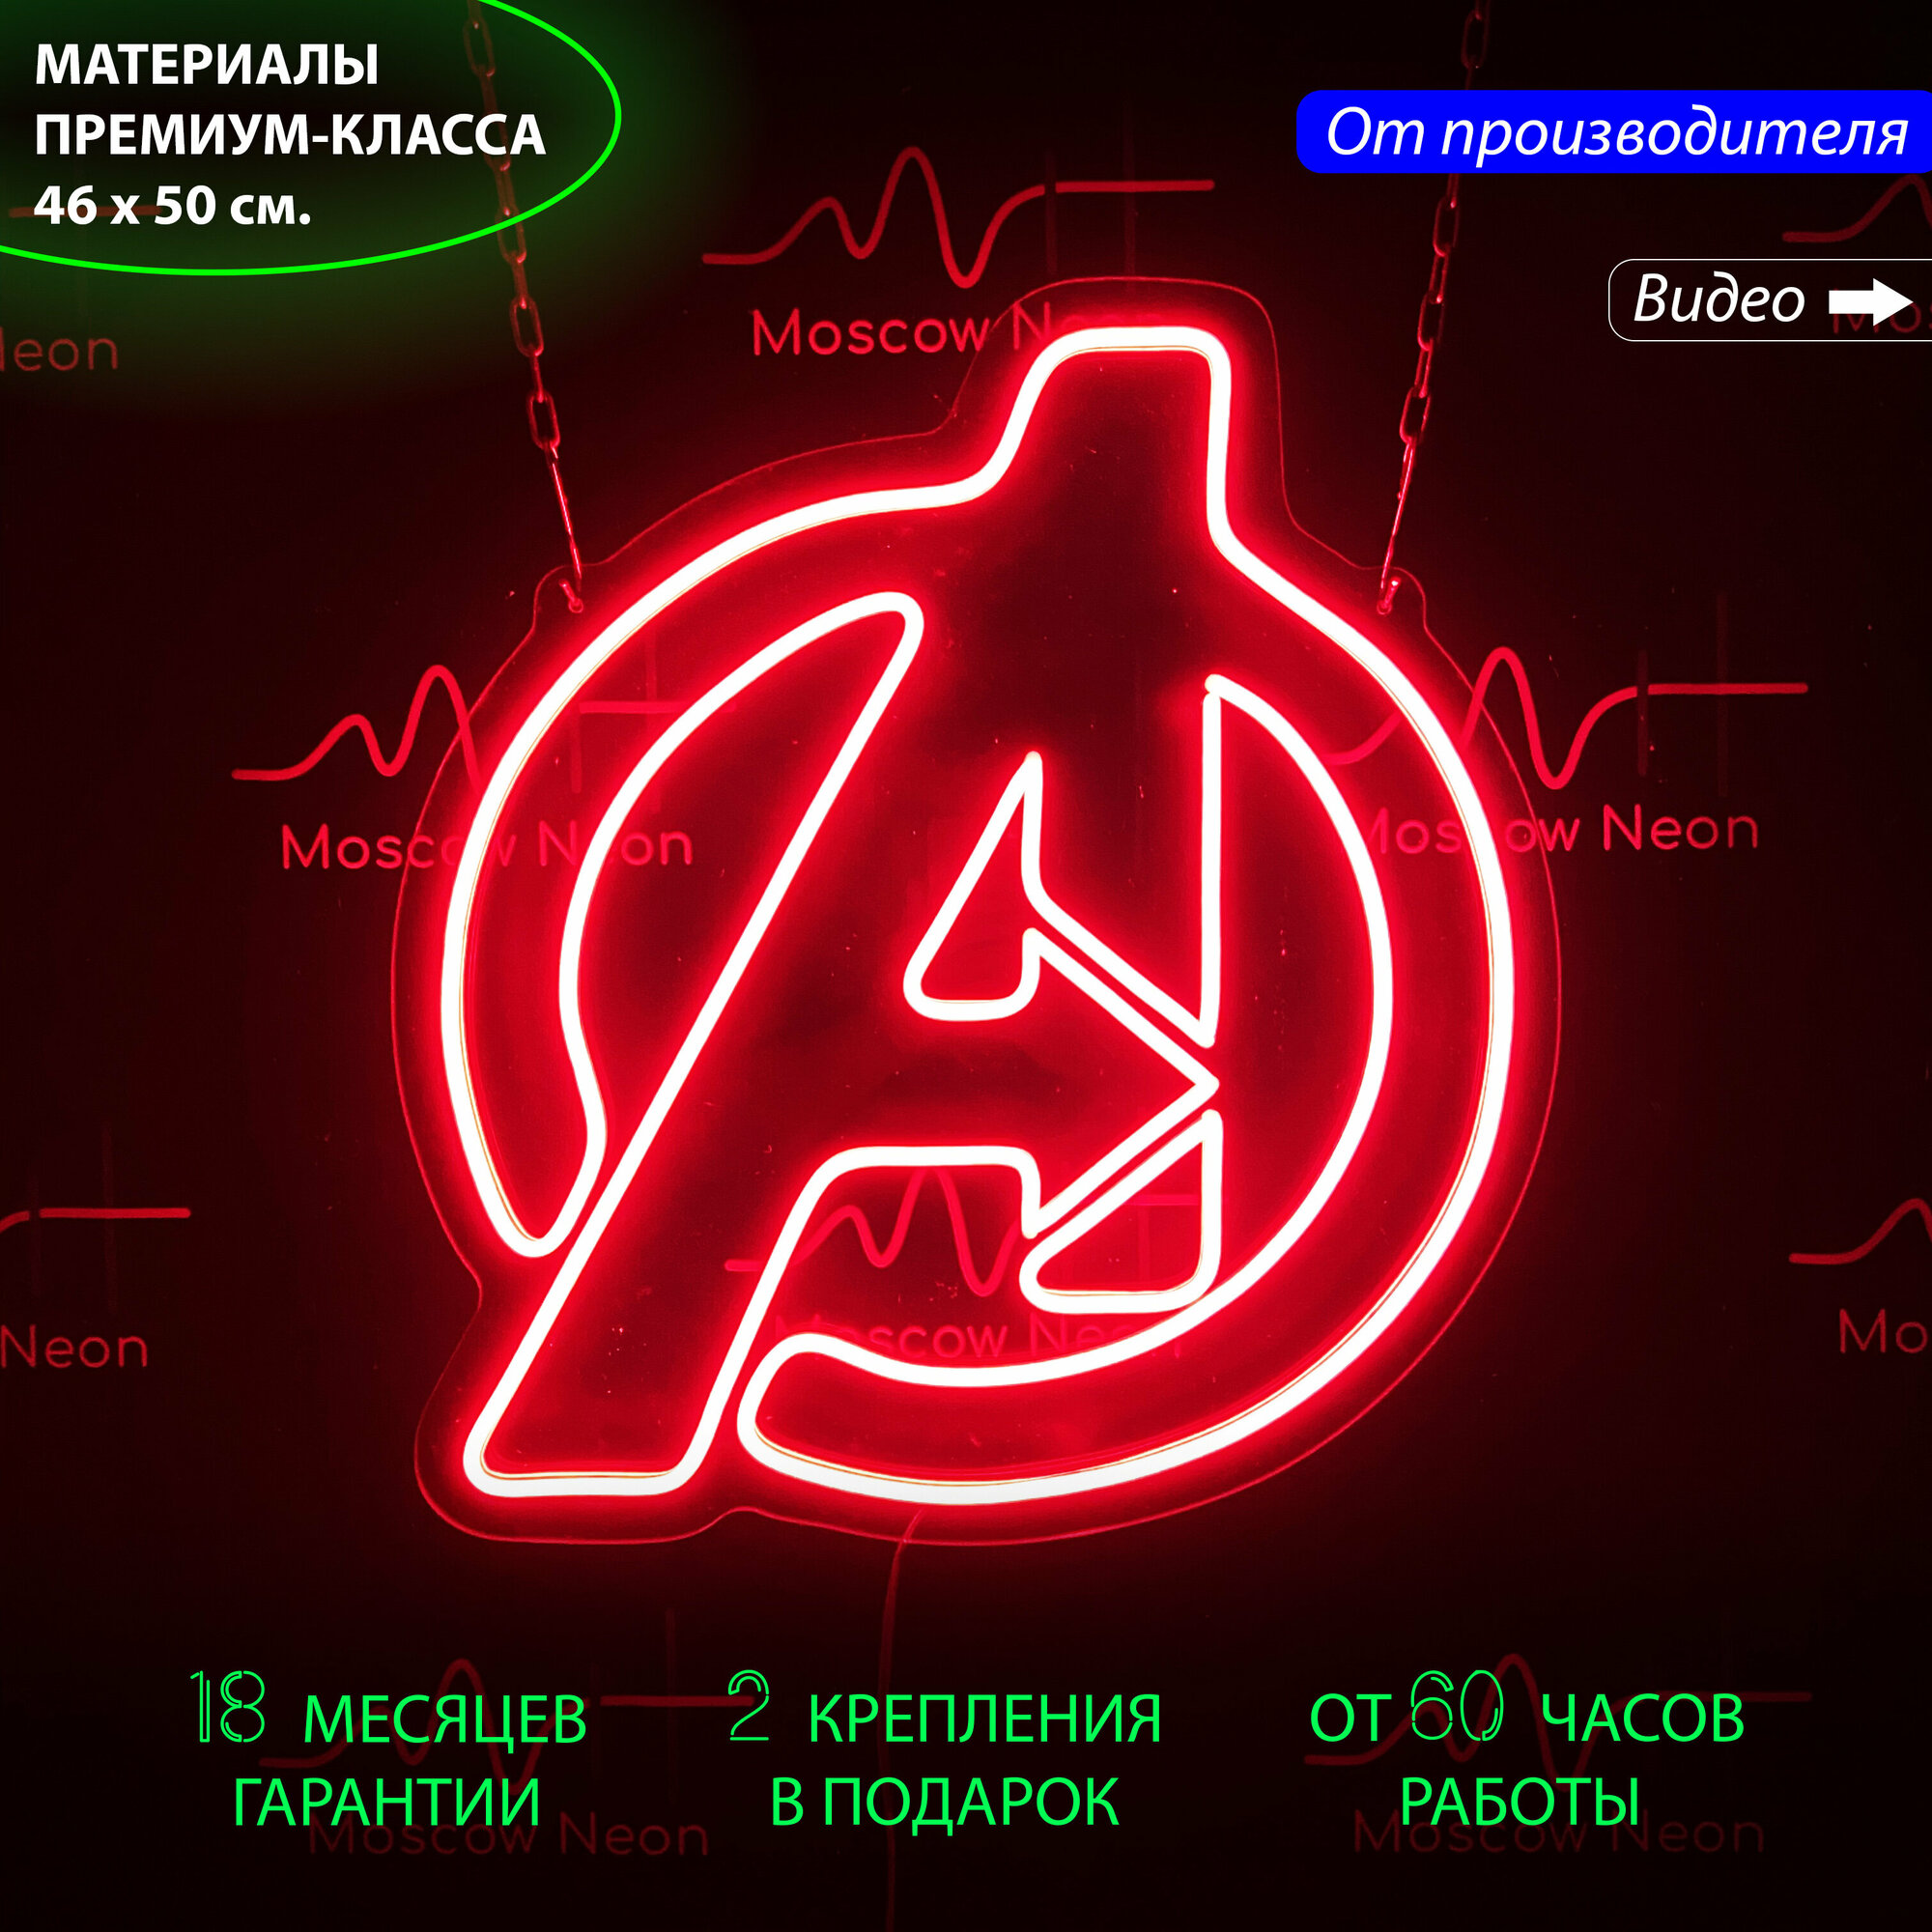 Неоновая вывеска в виде значка Мстителей (Marvel) 46 x 50 см